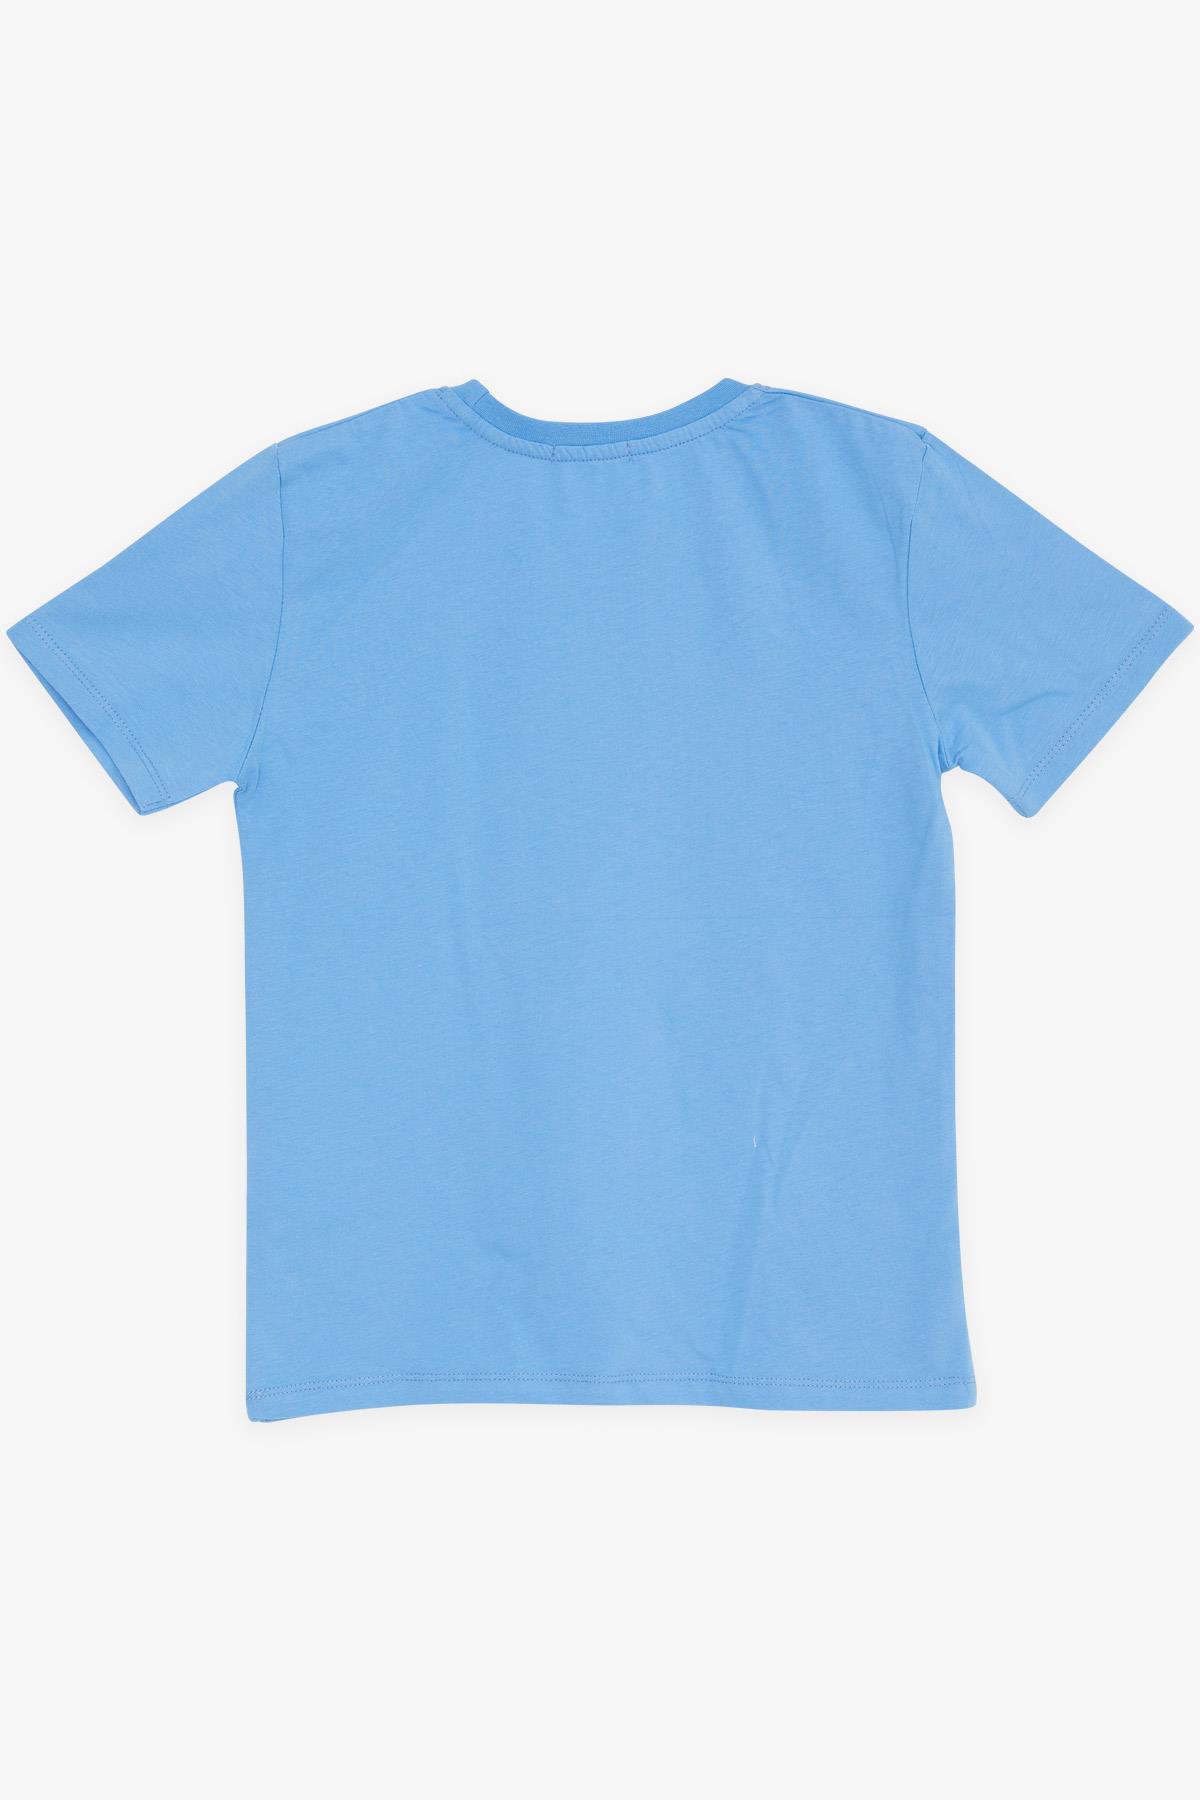 Erkek Çocuk Tişört Renkli Yazı Baskılı Mavi 8-14 Yaş - Yazlık Tişört  Modelleri | Breeze